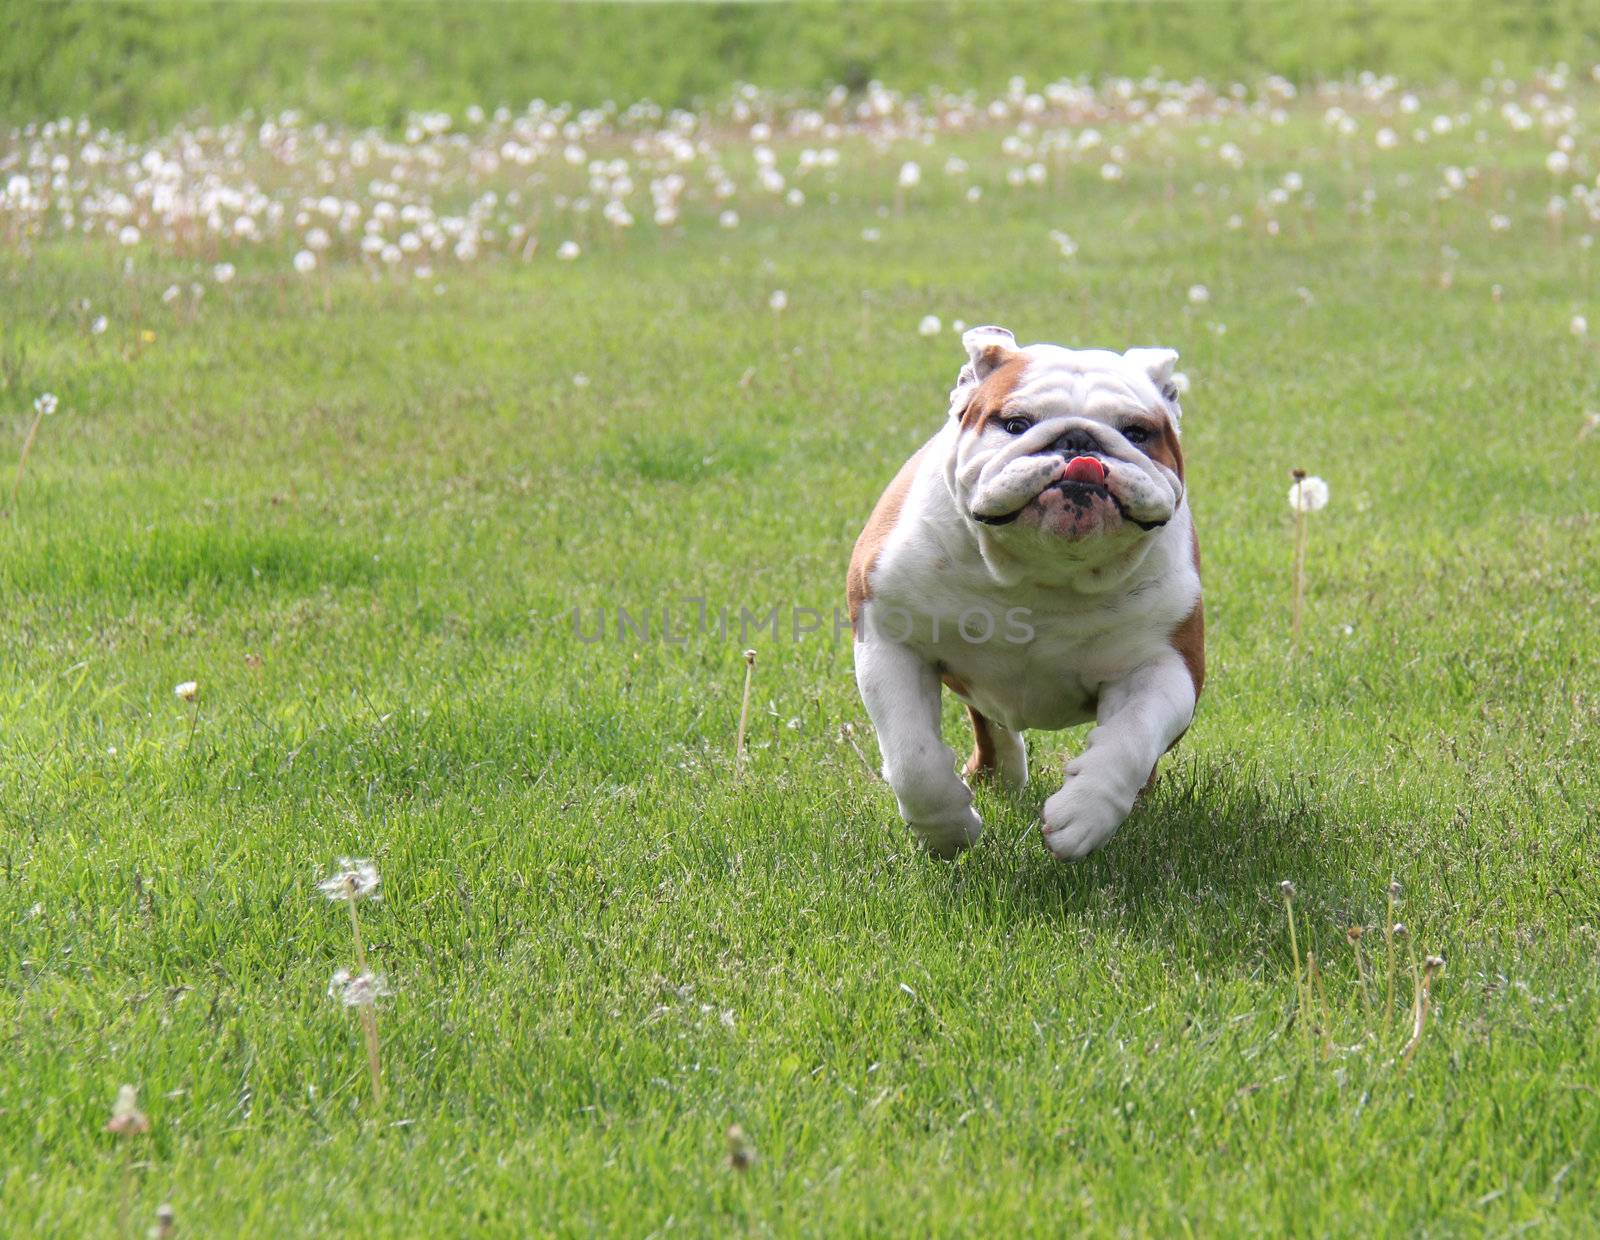 dog running - english bulldog running in the grass